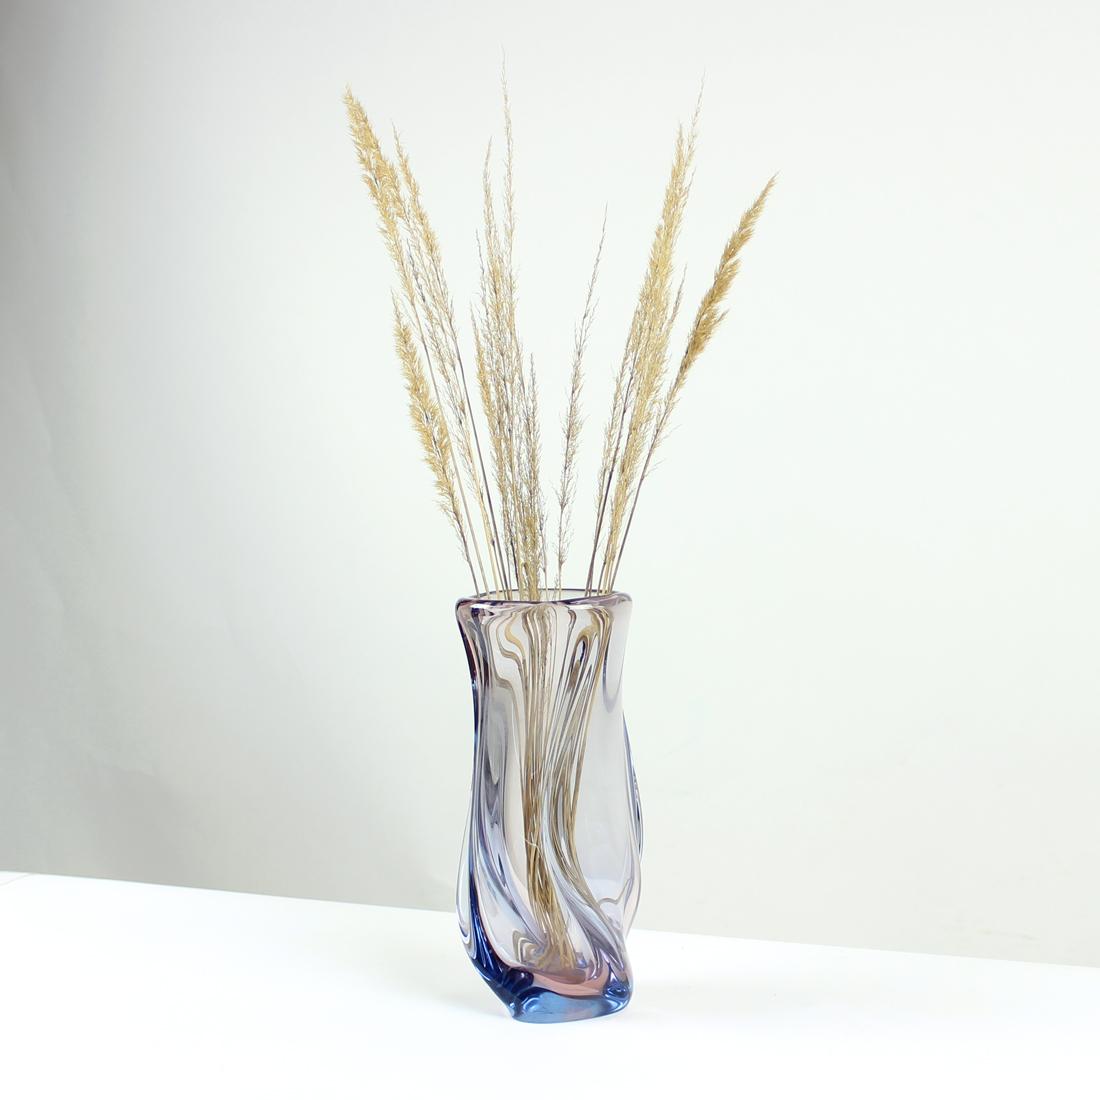 Große und schwere Vase aus Murano-Glas. Produziert in der Tschechoslowakei in den 1960er Jahren von Josef Hospodka und der Glasfabrik Skrdlovice. Die Vase ist aus transparentem Glas mit leicht blauem Farbton. Die Form ist super elegant, da sie sich